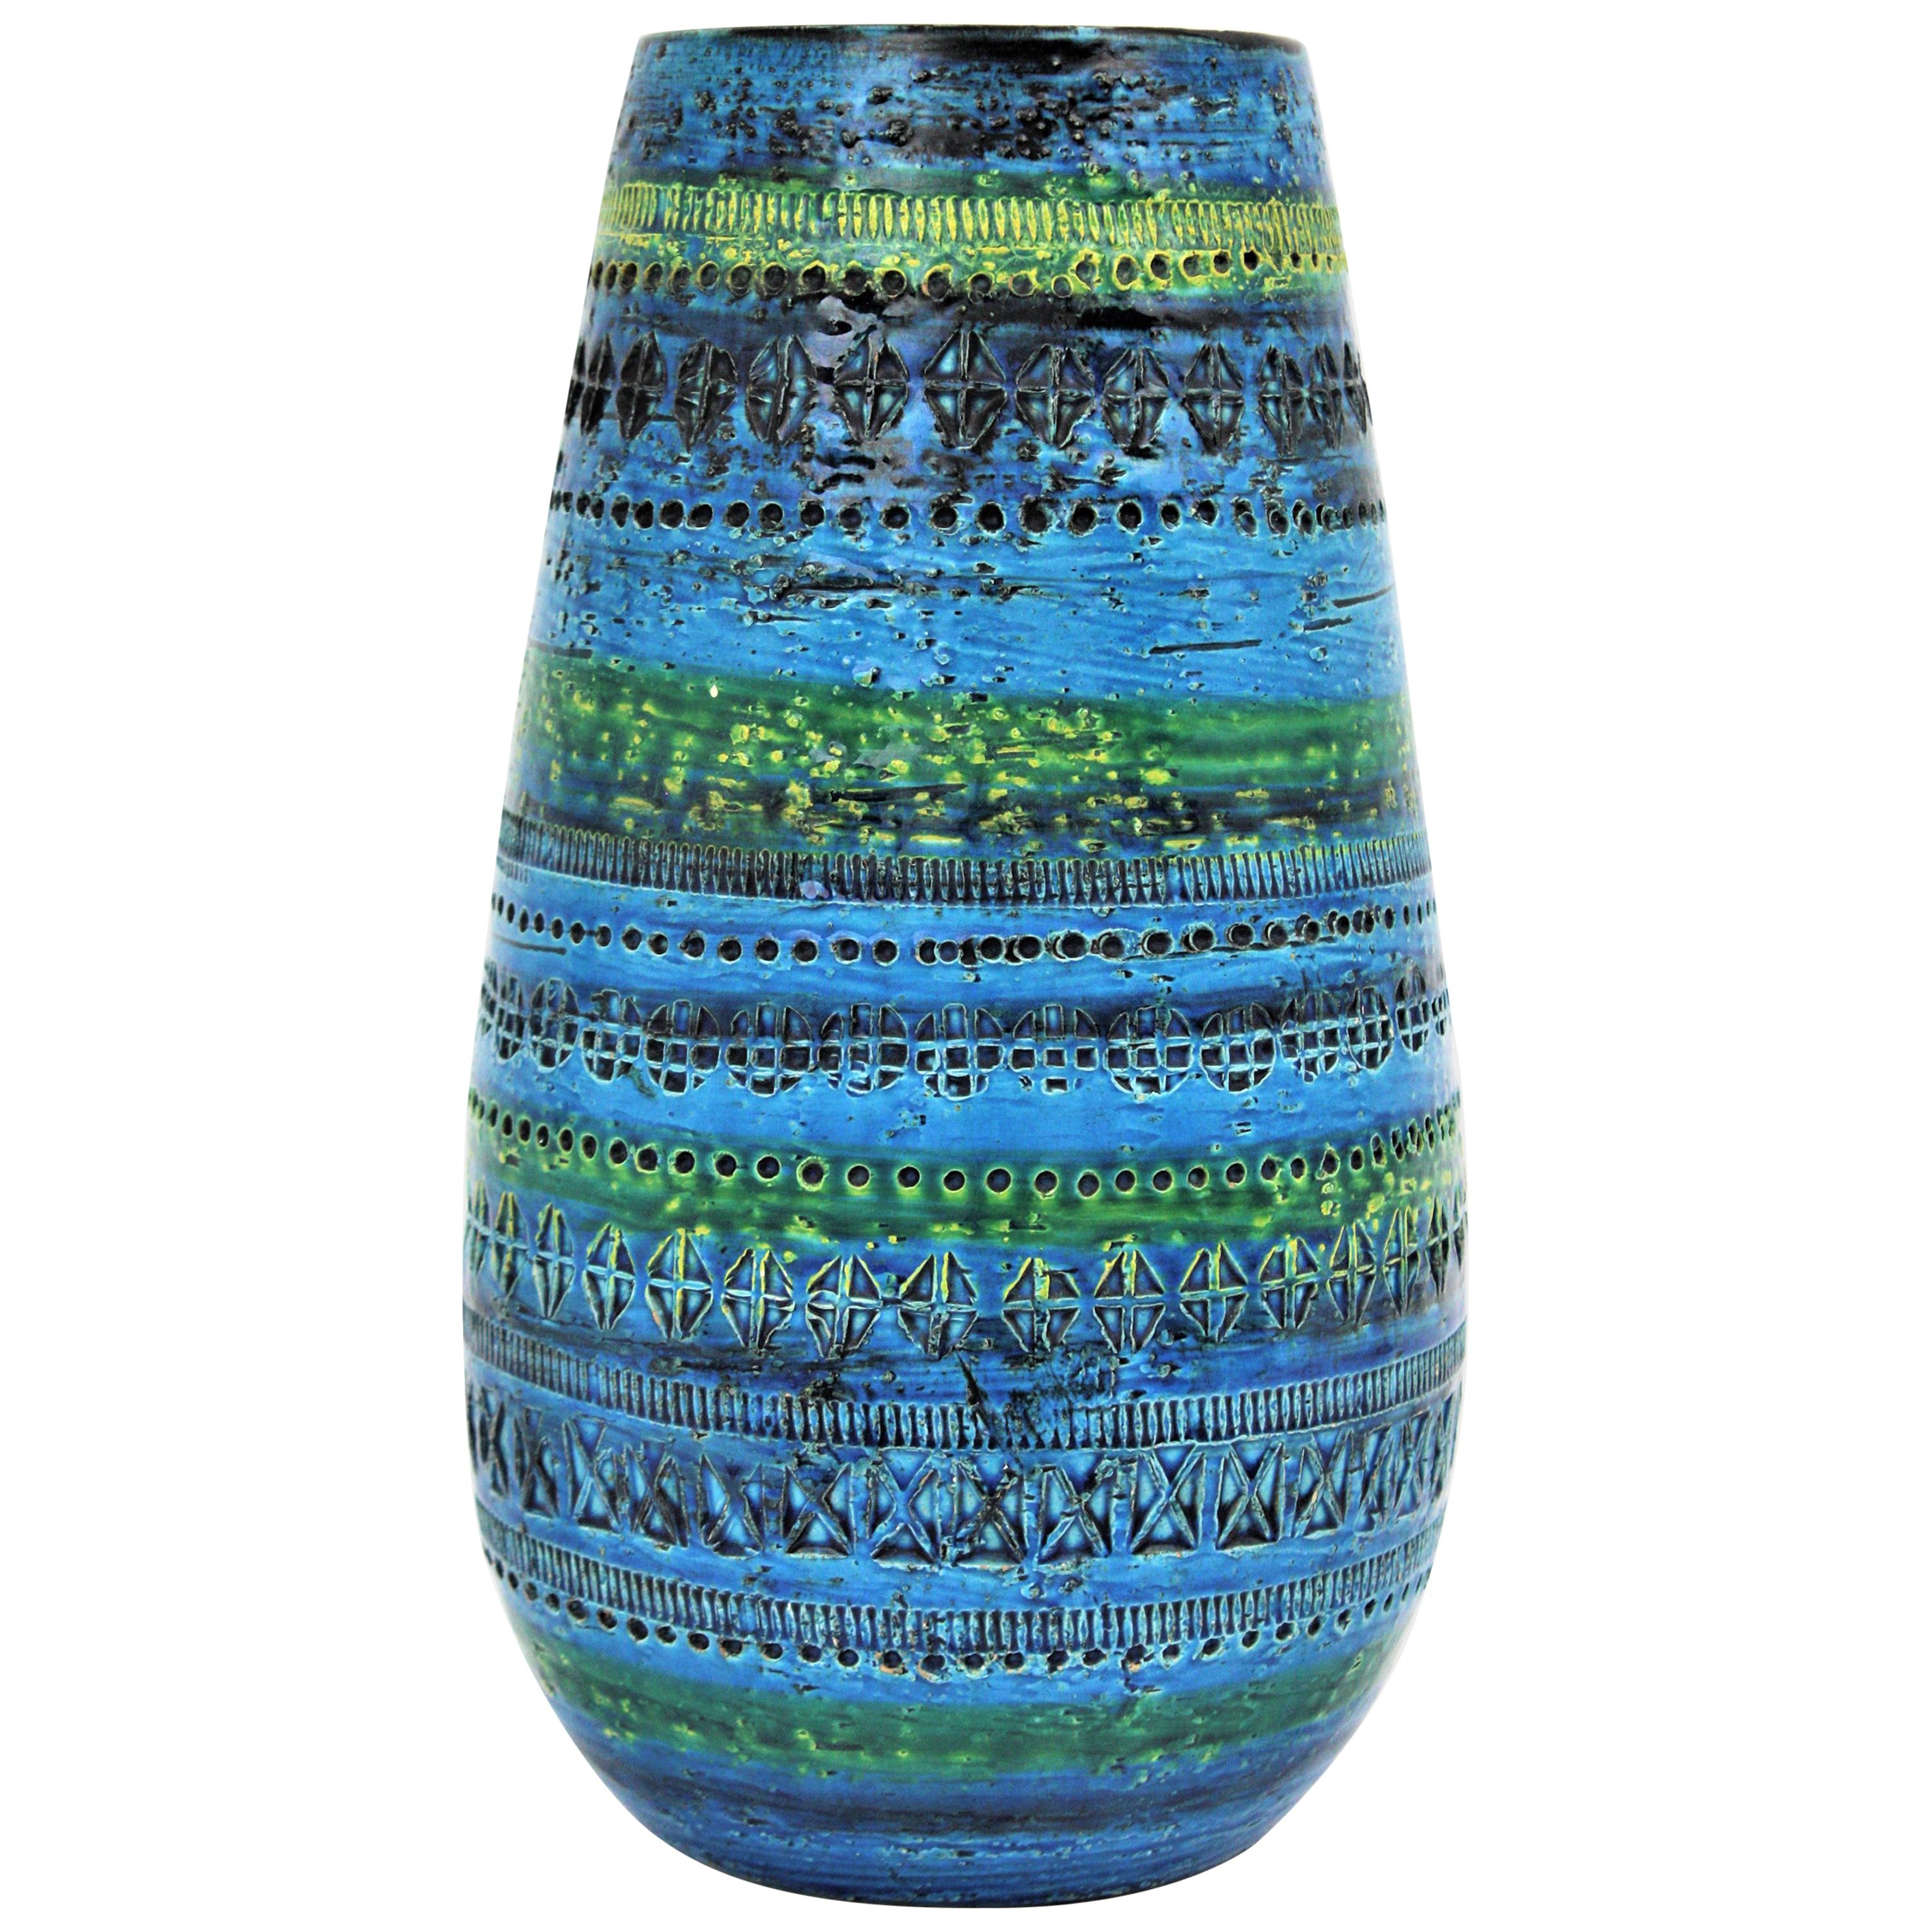 Aldo Londi Bitossi Rimini Blue Glazed Ceramic Ovoid Large Vase